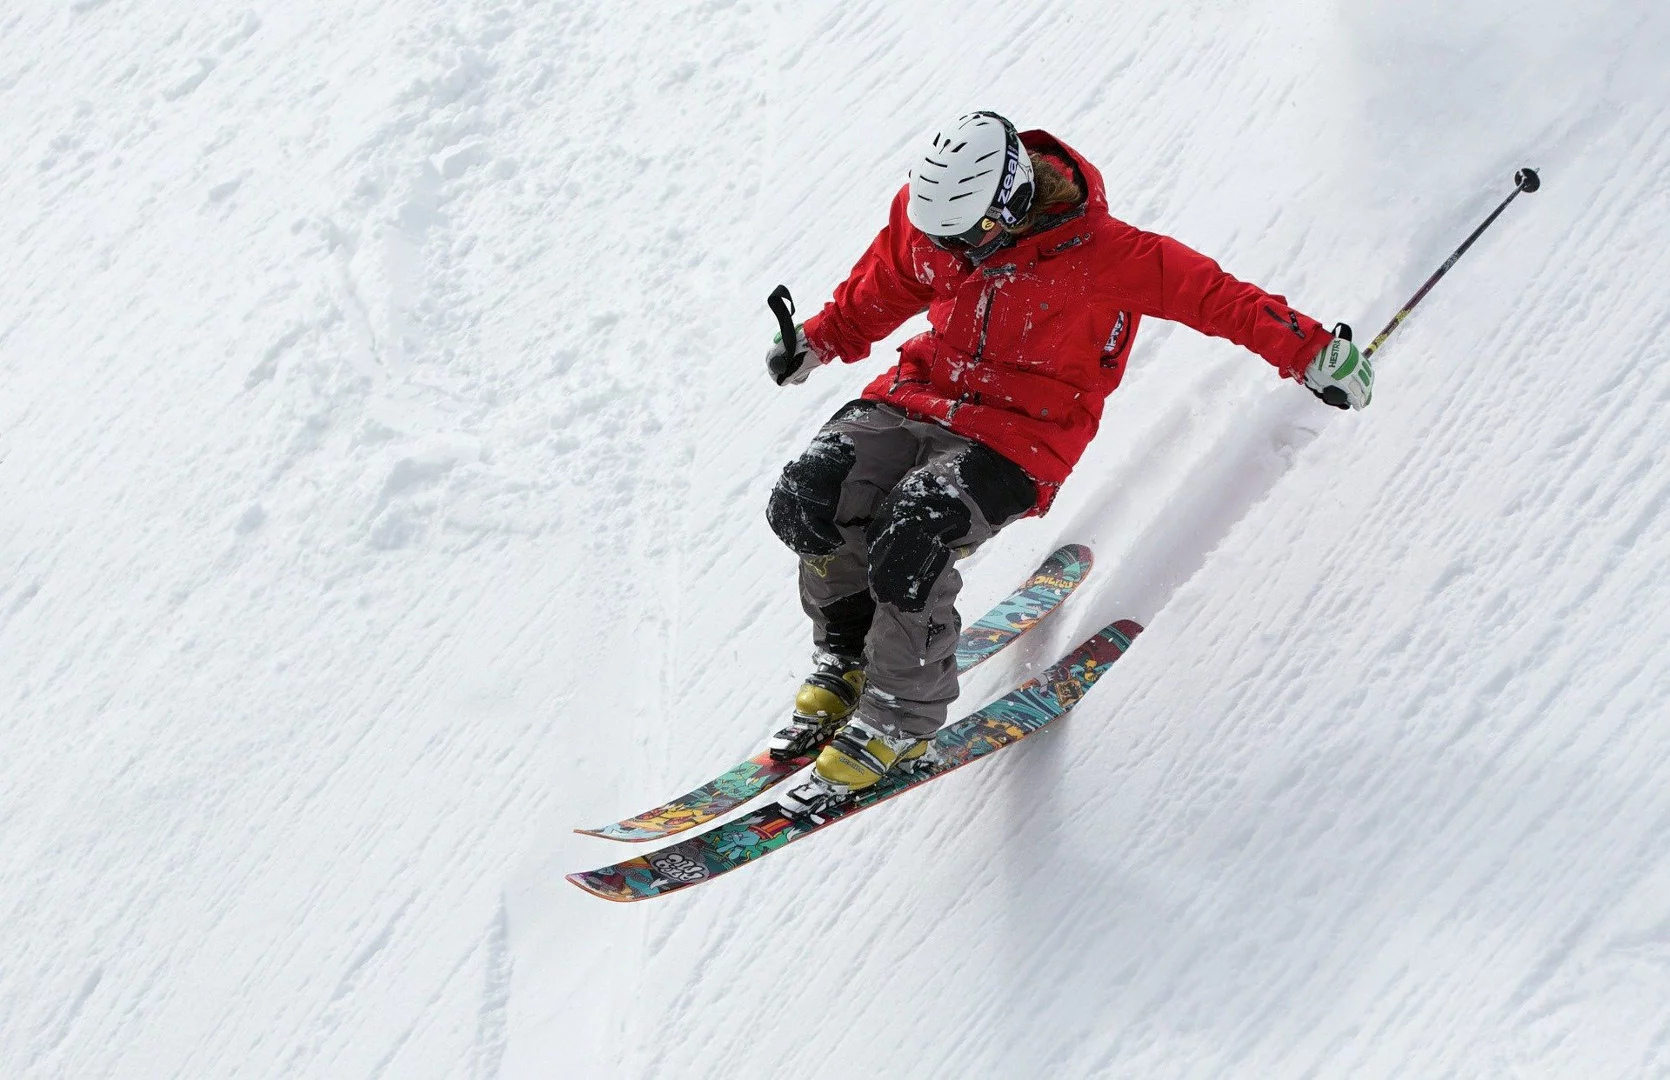 Poradnik narciarski: gdzie wybrać się na narty w Polsce oraz ile kosztuje ten sport?